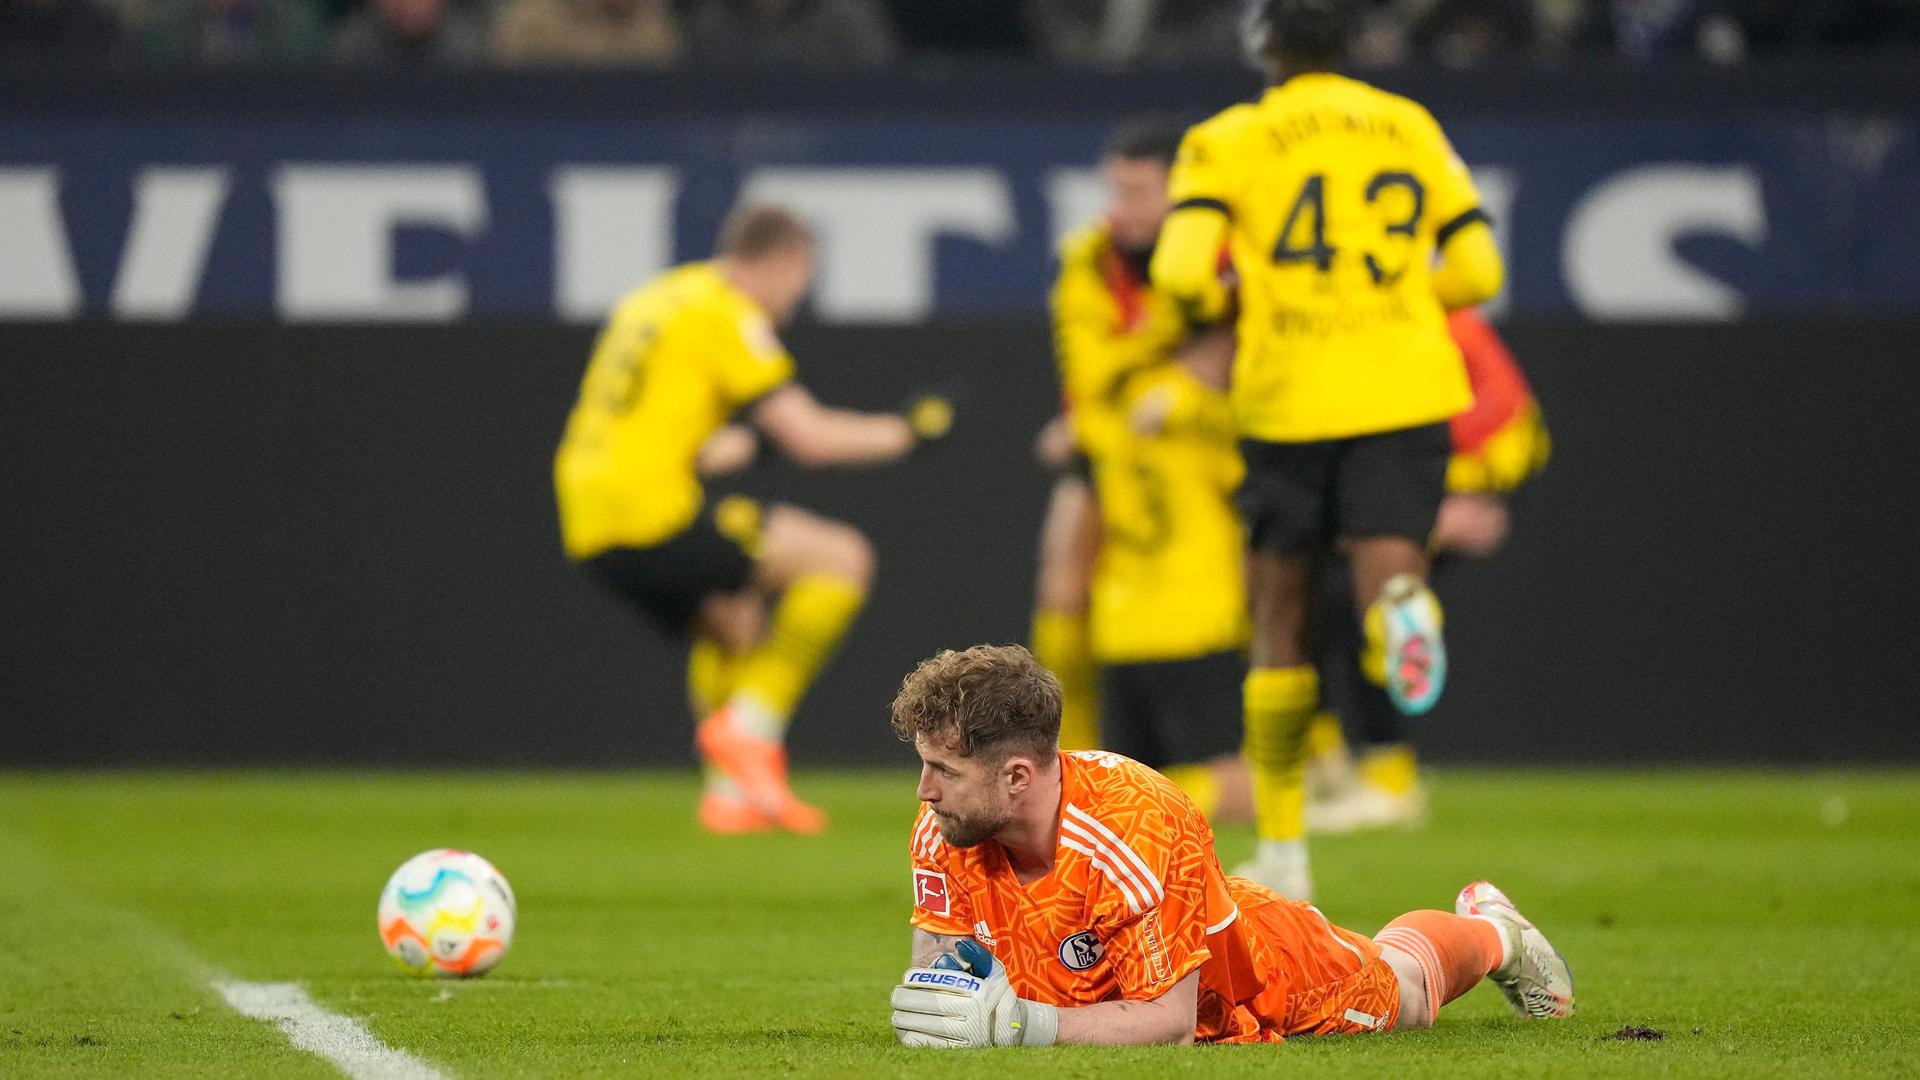 Der Torhüter von Schalke, Fährmann, liegt auf dem Rasen. Neben ihm der Ball, der ins Tor rollt.